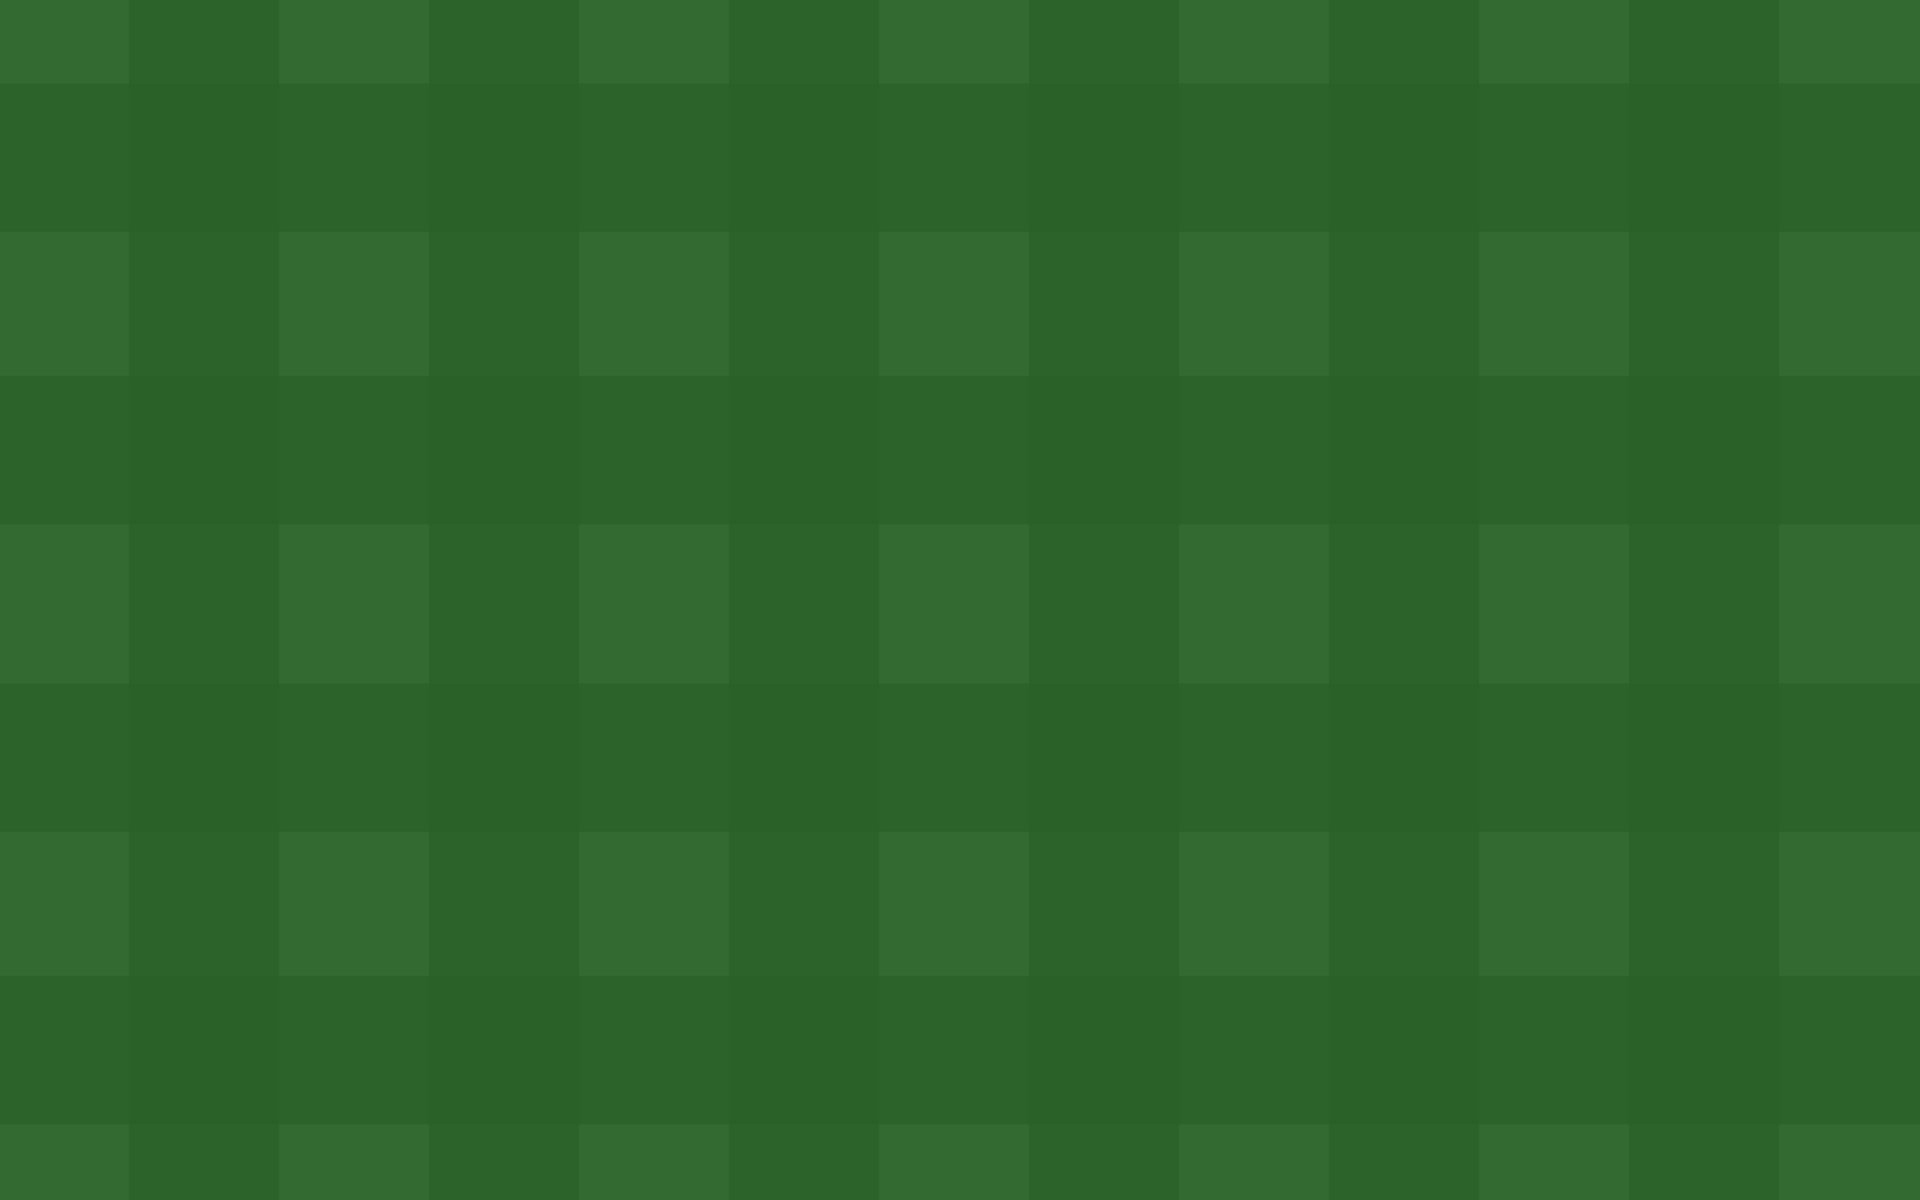 Flatter green. Шотландская клетка зеленая. Зеленая клетка фон. Обои в клетку зеленого цвета. Серо зеленая клетка.